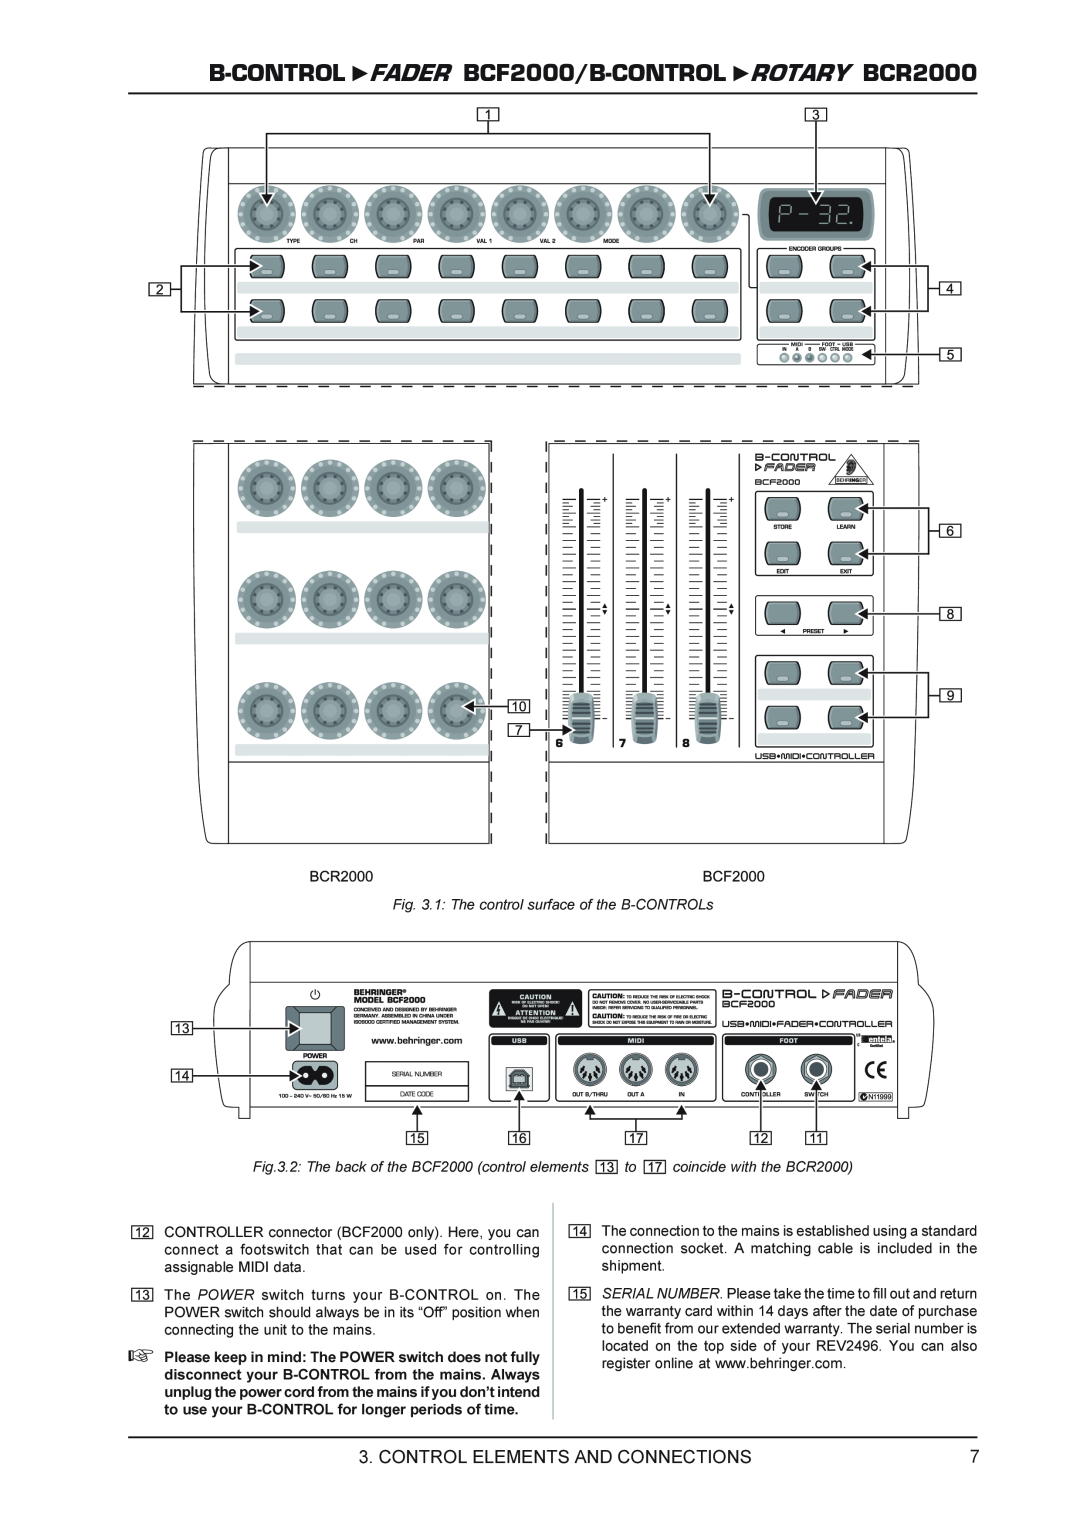 Behringer FADERB CF2000B manual B-CONTROL FADER BCF2000/B-CONTROL ROTARY BCR2000, Control Elements And Connections 